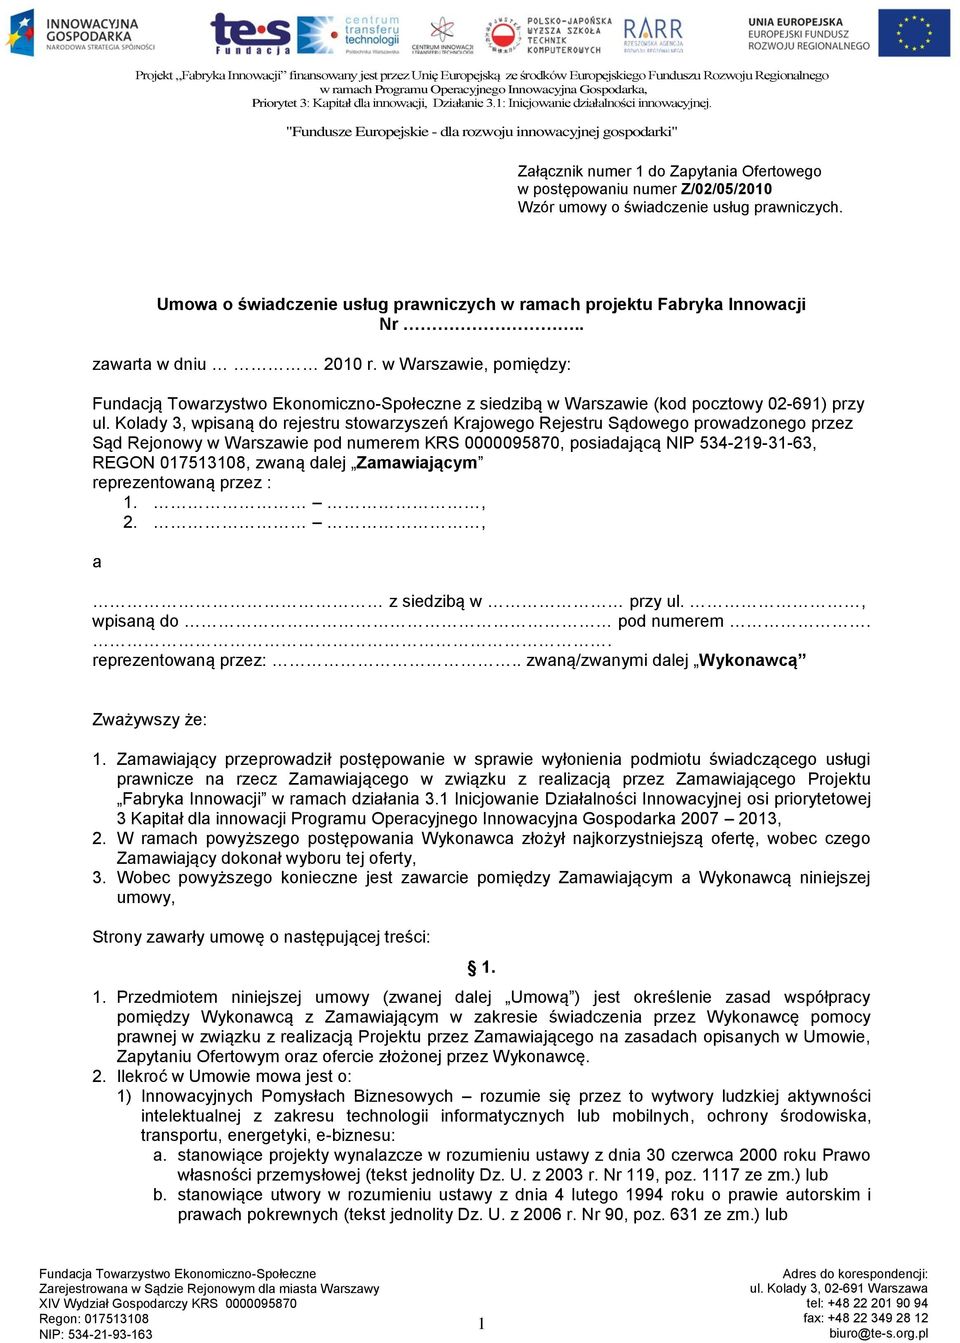 Kolady 3, wpisaną do rejestru stowarzyszeń Krajowego Rejestru Sądowego prowadzonego przez Sąd Rejonowy w Warszawie pod numerem KRS 0000095870, posiadającą NIP 534-219-31-63, REGON 017513108, zwaną